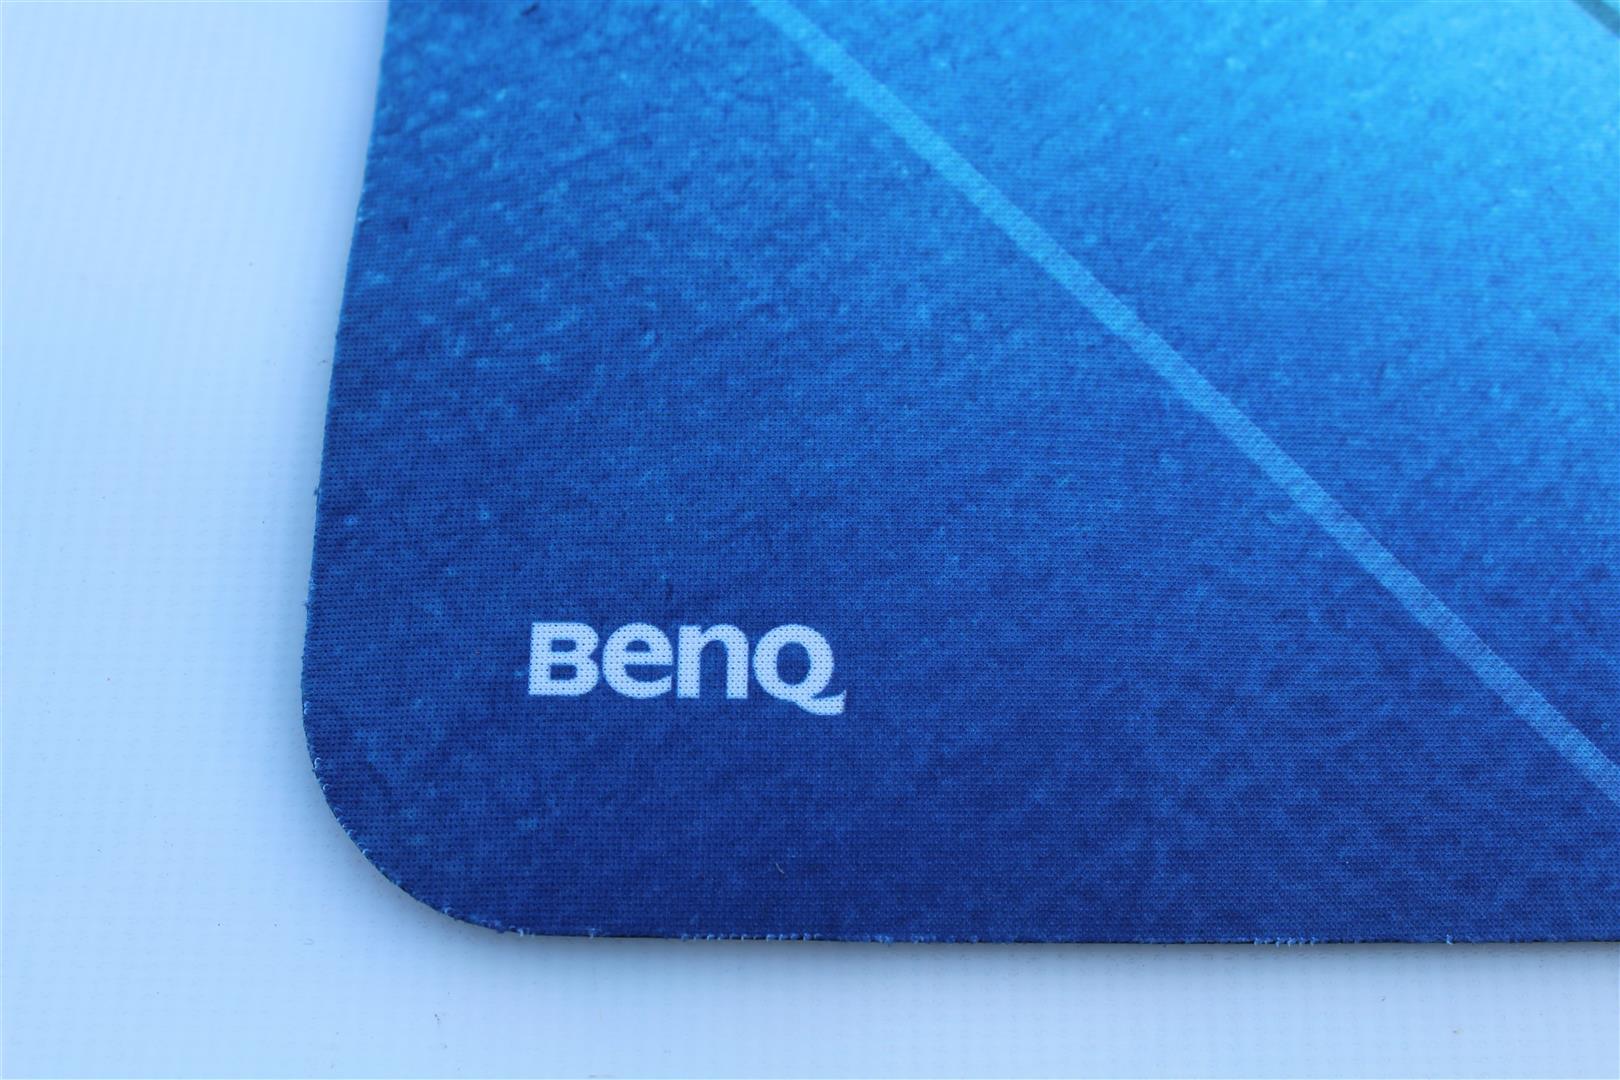 BenQ ZOWIE G-SR-SE Mouse Pad Review | PC TeK REVIEWS